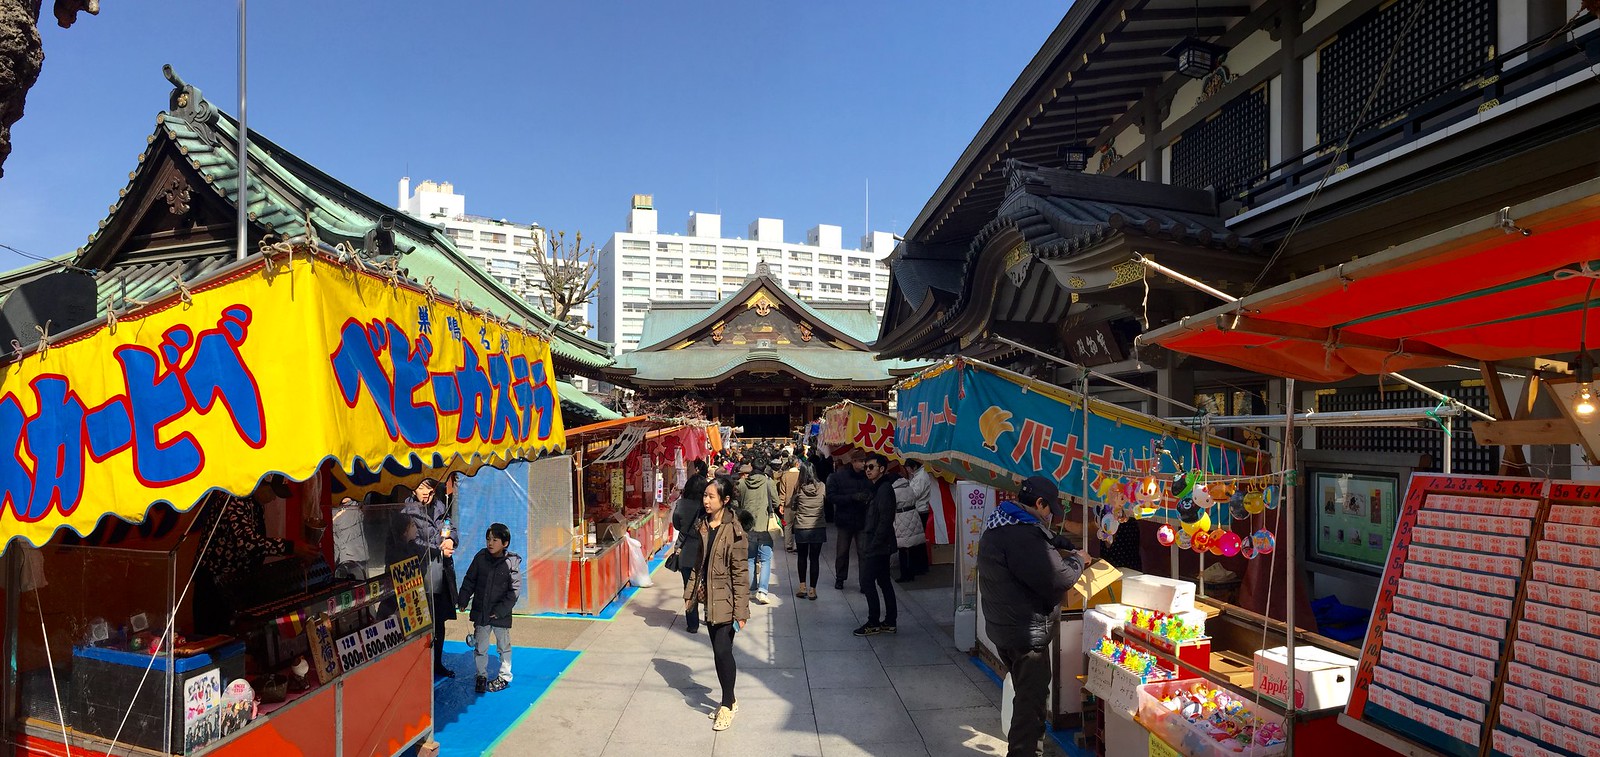 Yushima Tenjin Stalls in vicinity